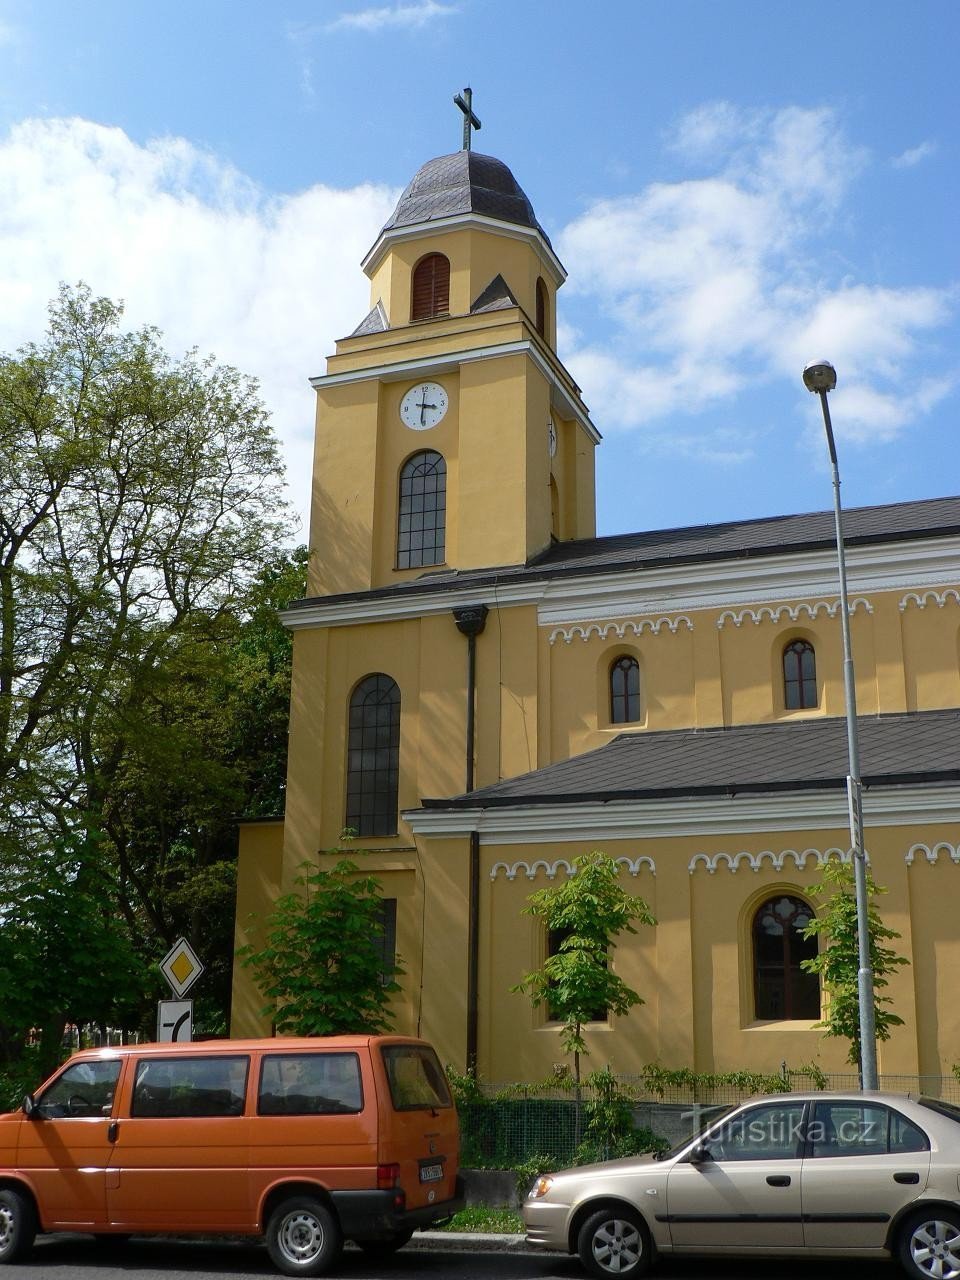 De toren van de kerk van St. Peter en Paul